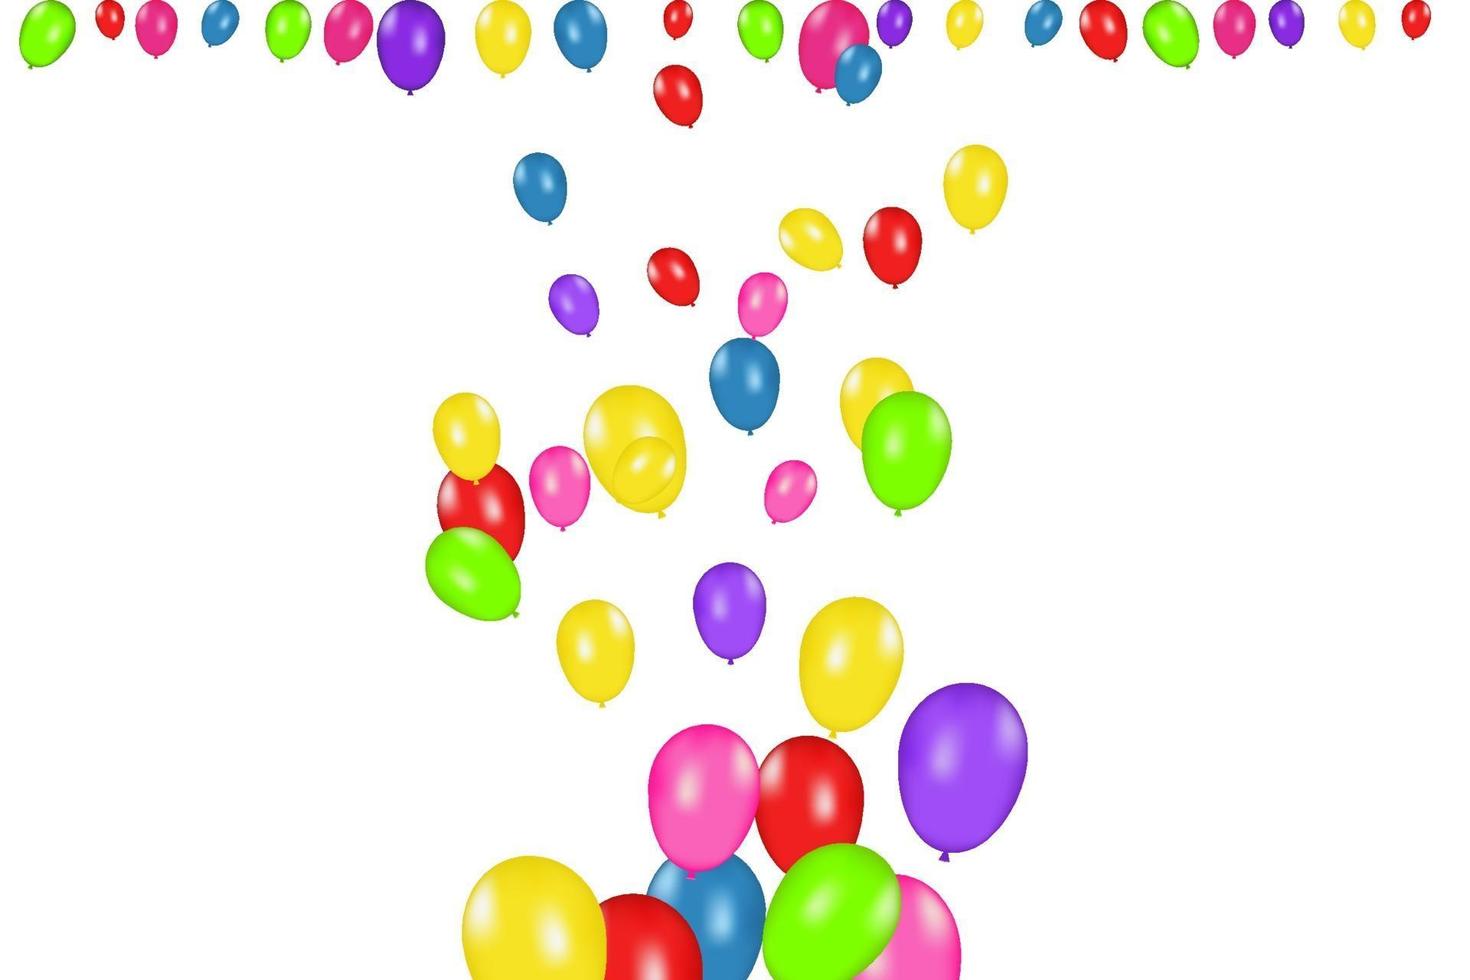 composizione in colori di palloncini realistici vettoriali isolati su sfondo bianco. palloncini isolati. per biglietti di auguri di compleanno o altri disegni